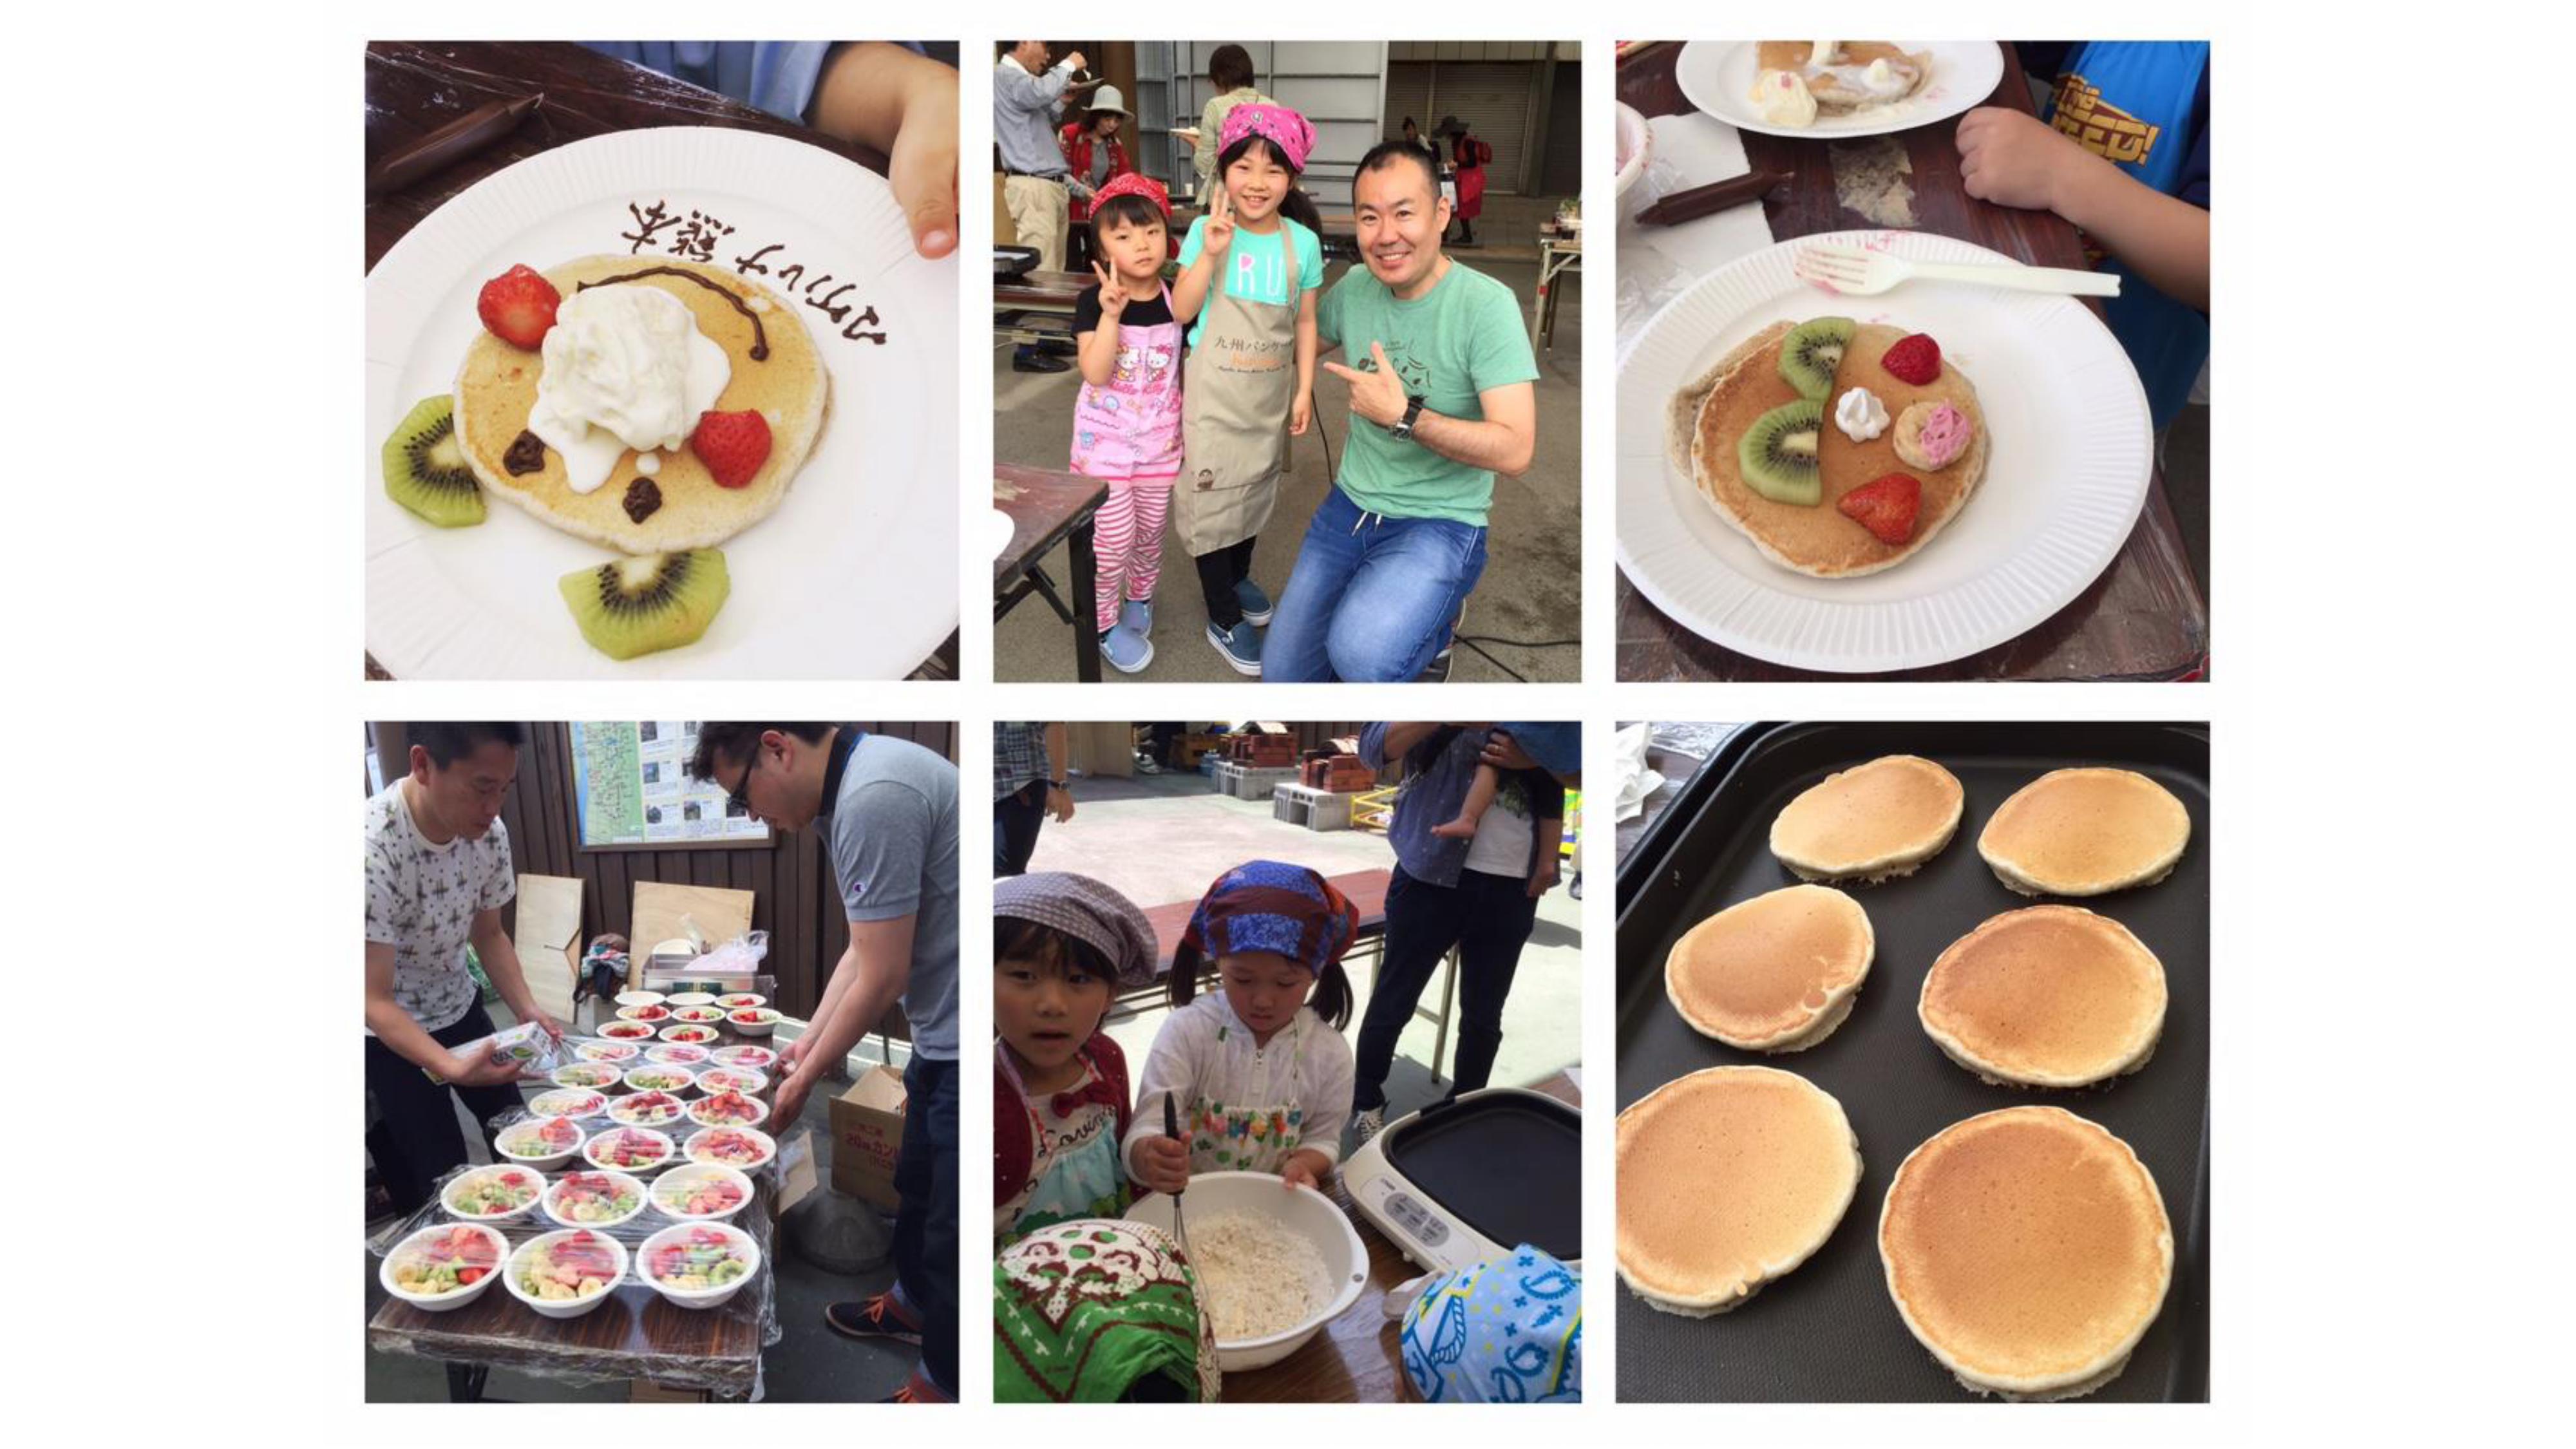 国境も 困難も乗り越えて 九州パンケーキは人々を笑顔にできる Kyushu Island Icc Fukuoka 文字起こし版 Icc Industry Co Creation